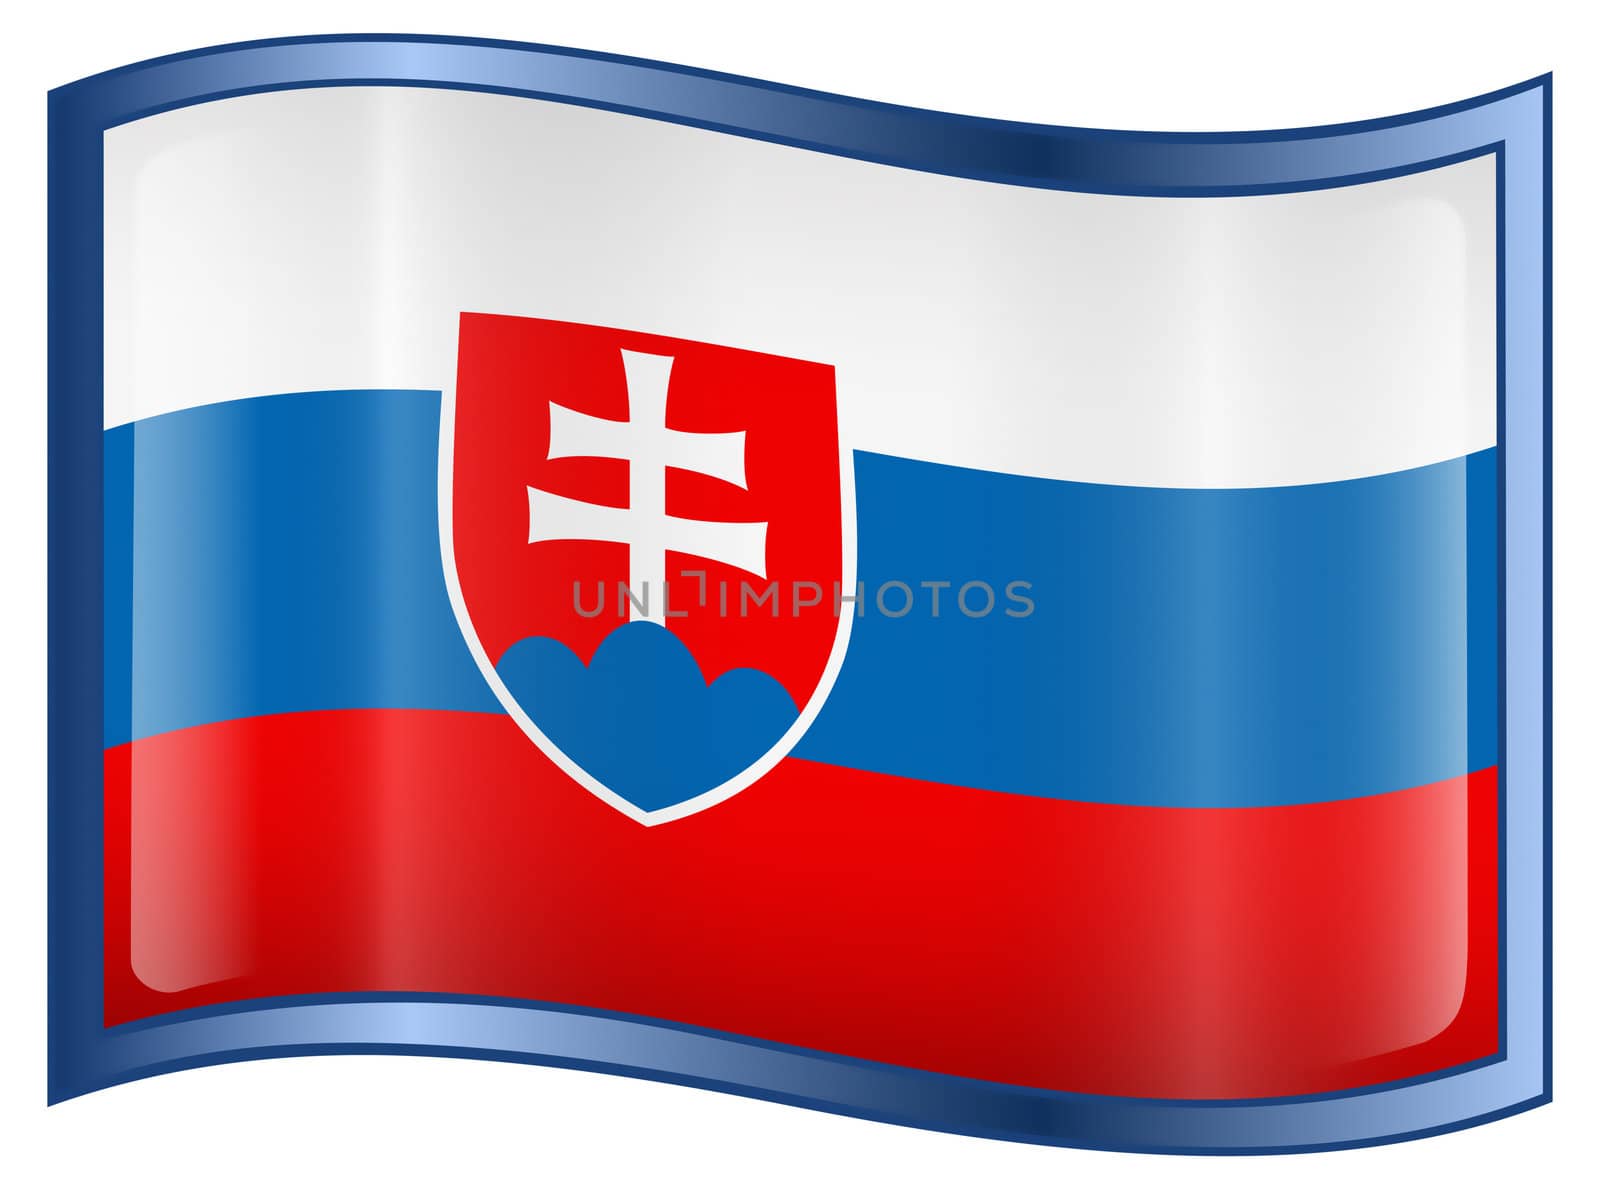 Slovakia Flag icon, isolated on white background.